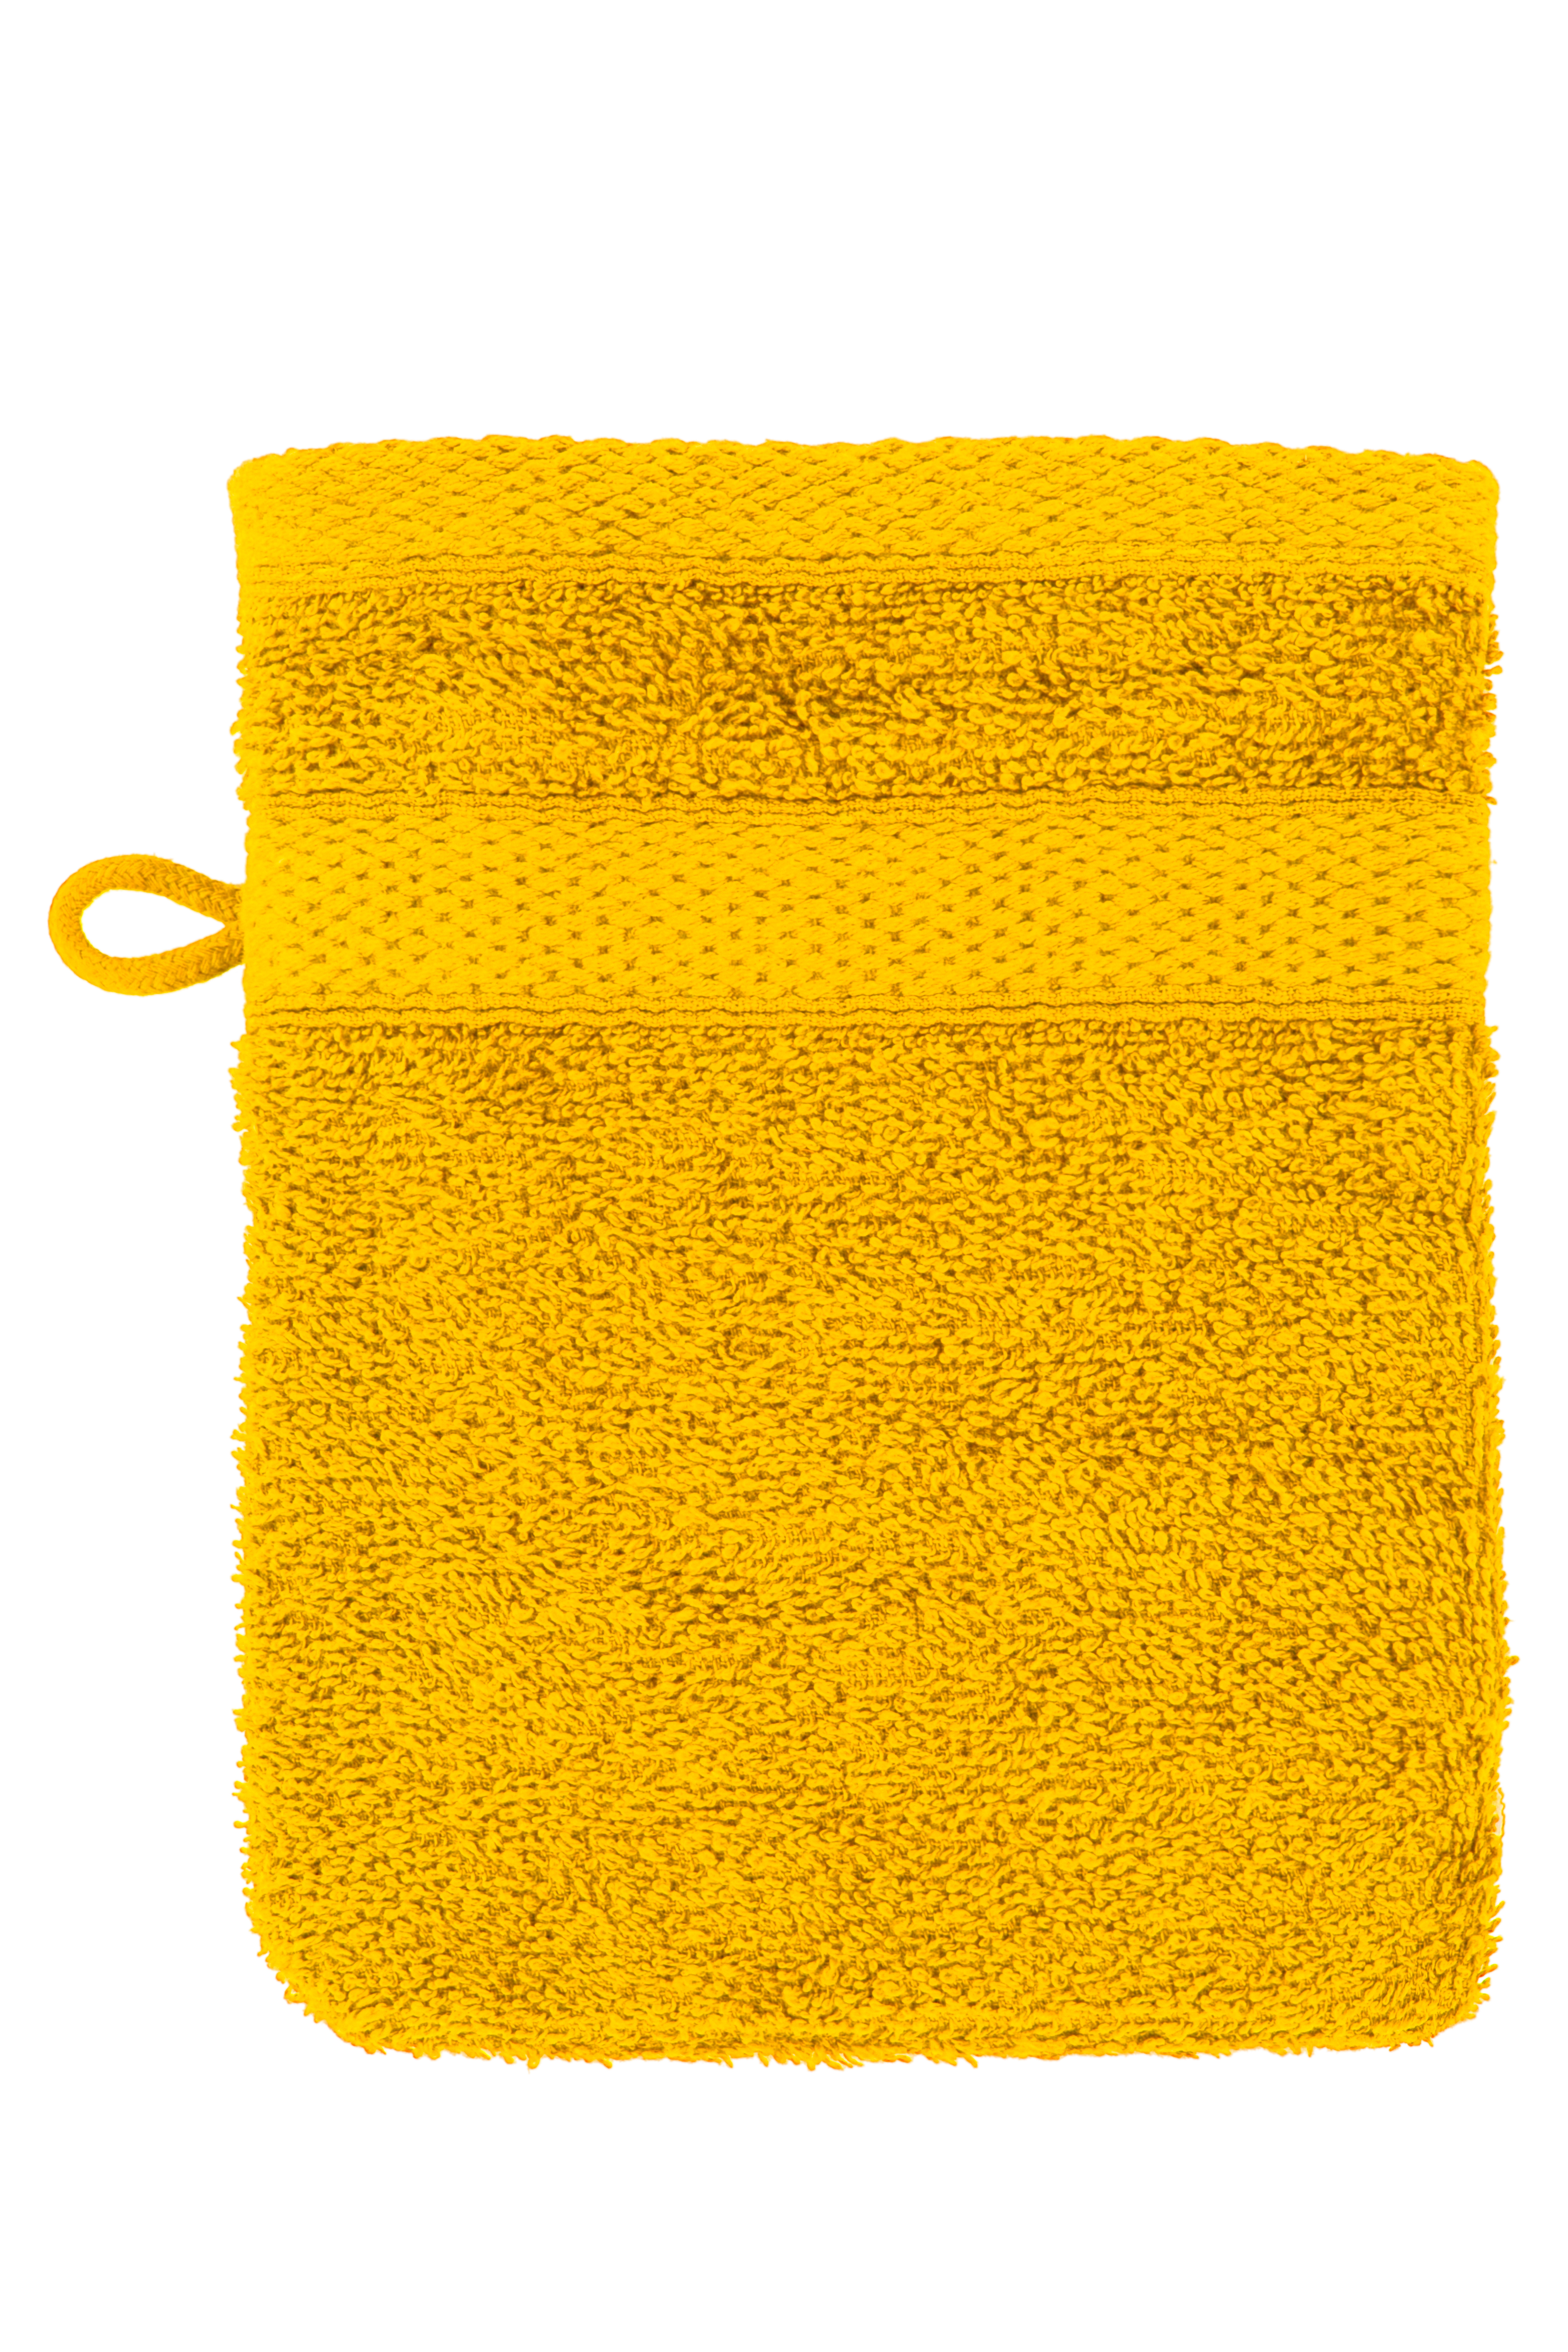 Gant de toilette 15x21cm, sunflower yellow - set2